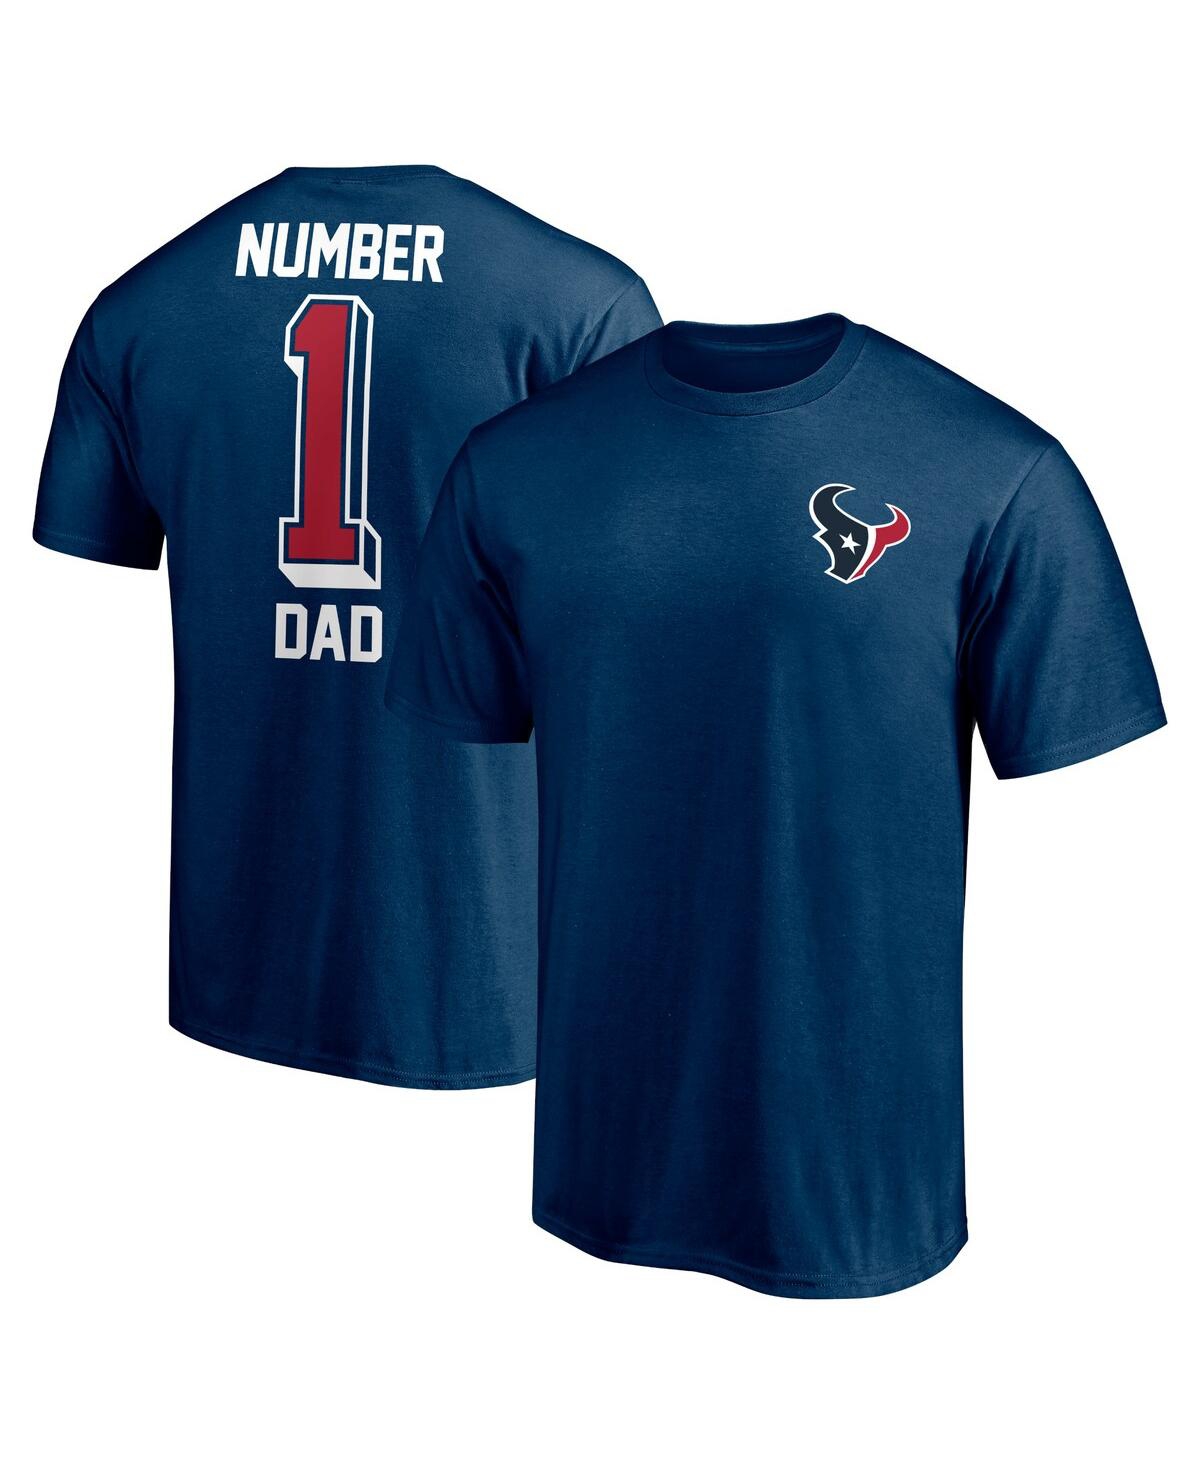 Shop Fanatics Men's  Navy Houston Texans #1 Dad T-shirt